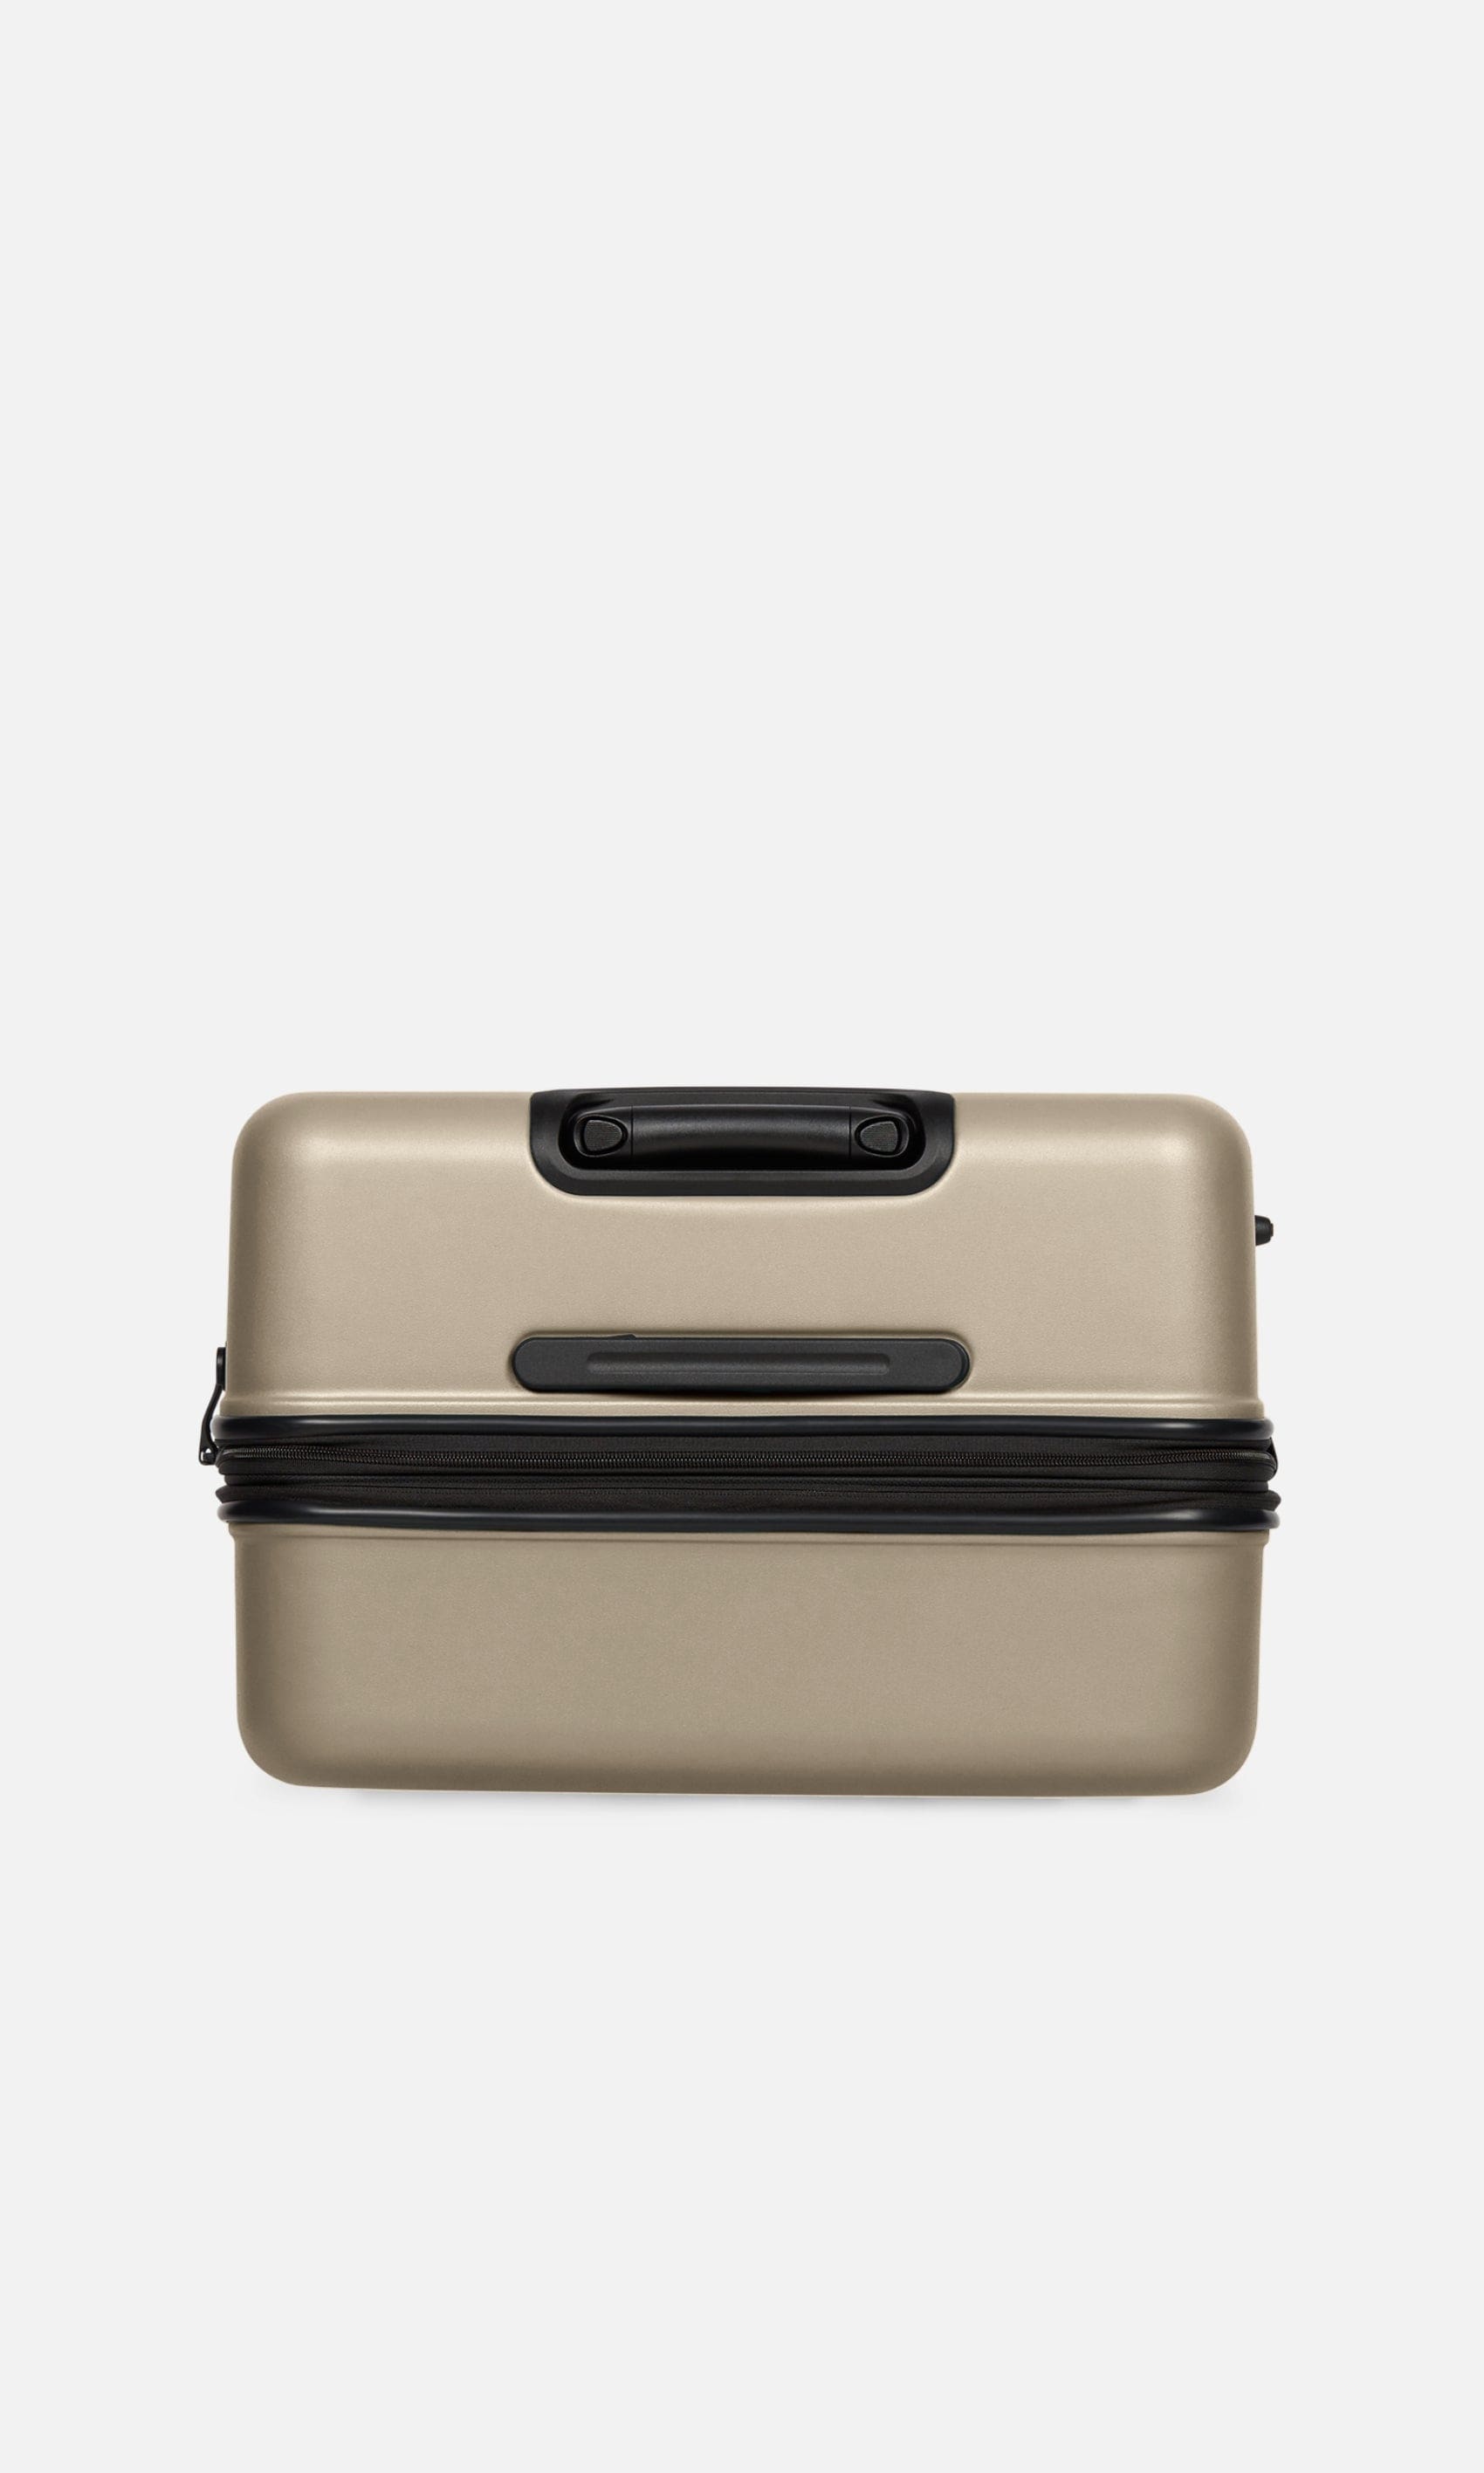 Antler Luggage -  Clifton large in oak brown - Hard Suitcases Clifton Large Suitcase Oak Brown | Hard Suitcase | Antler UK